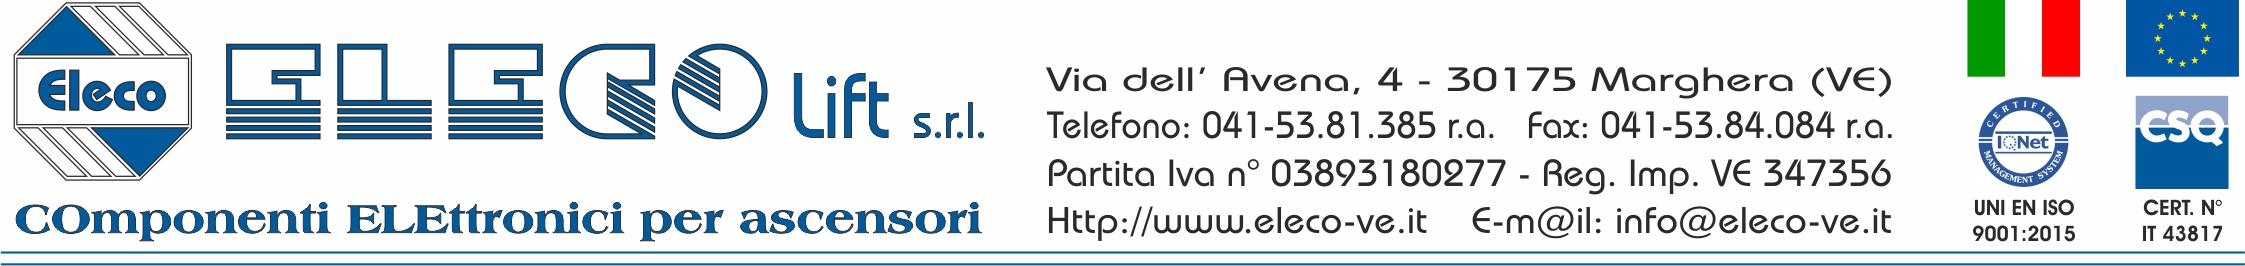 Eleco lift srl - Via dell'Avena 4, 30175 Marghera (VE), Tel. 041/5381385, Fax: 041/921475, e-mail: info@eleco-ve.it